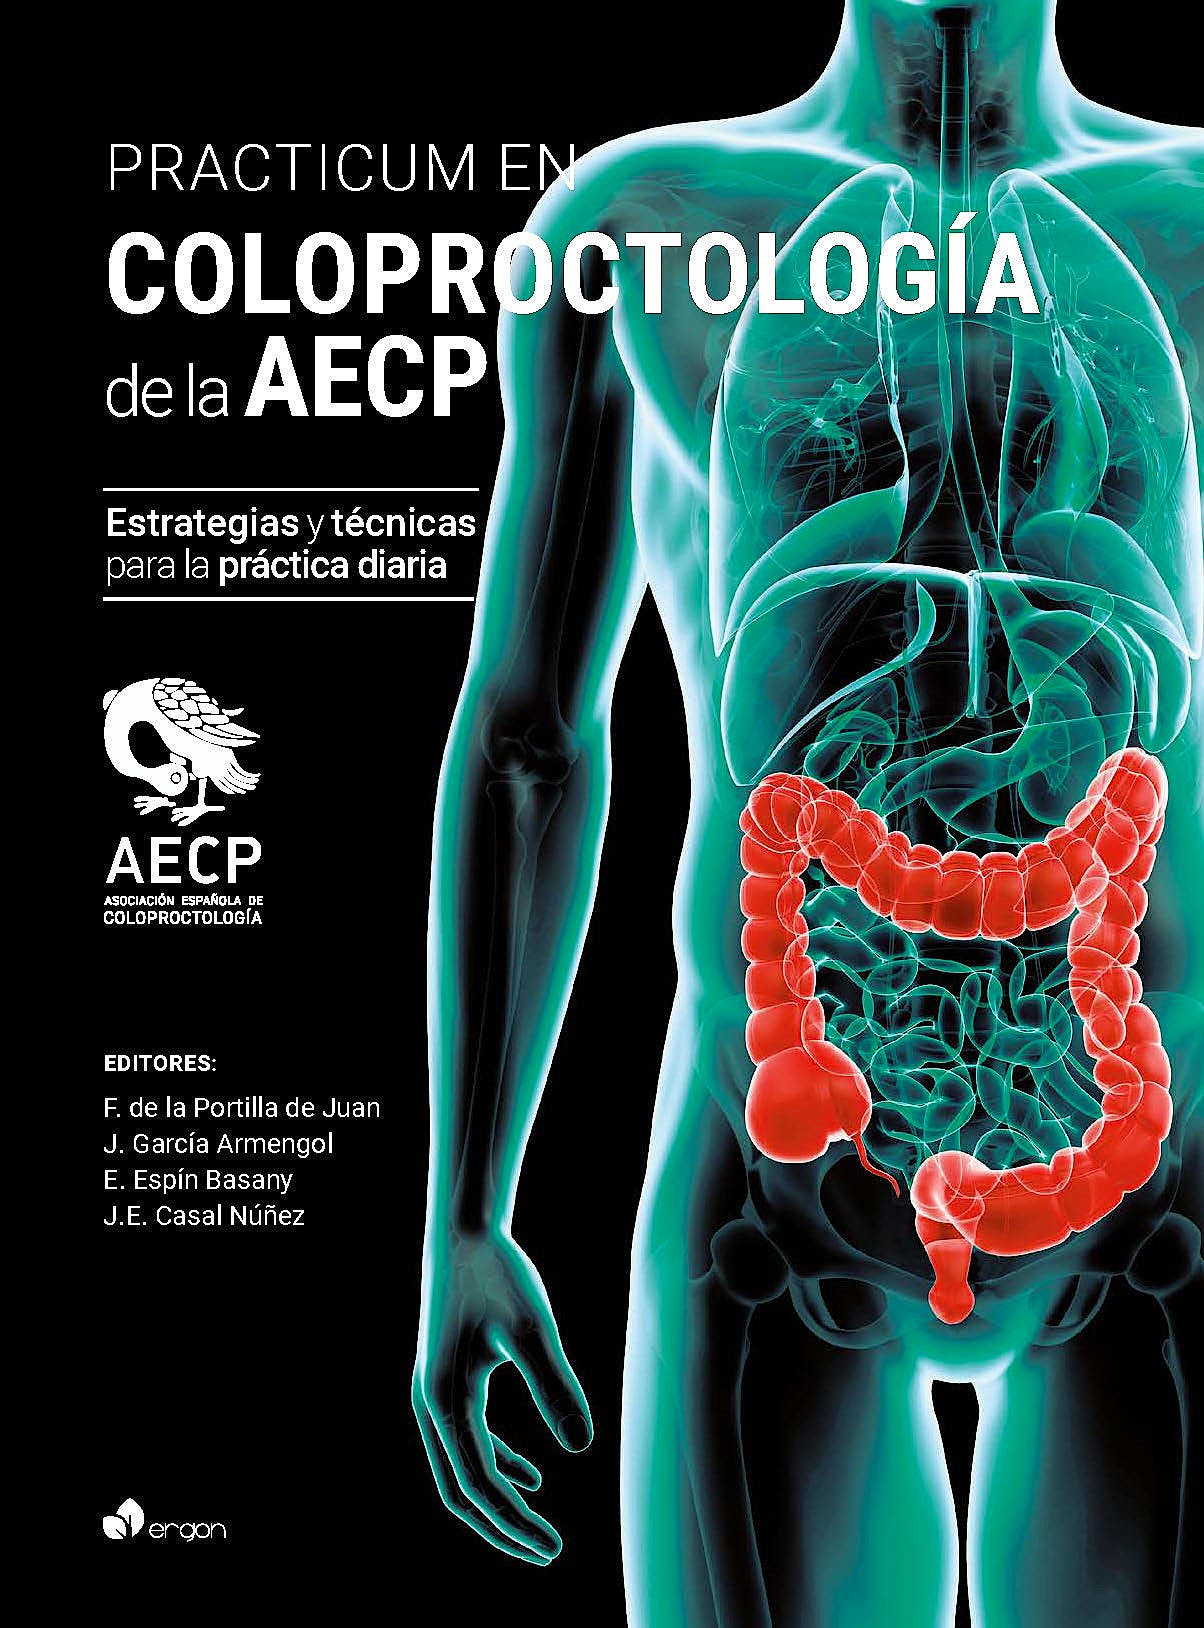 Practicum en Coloprotología de la AECP